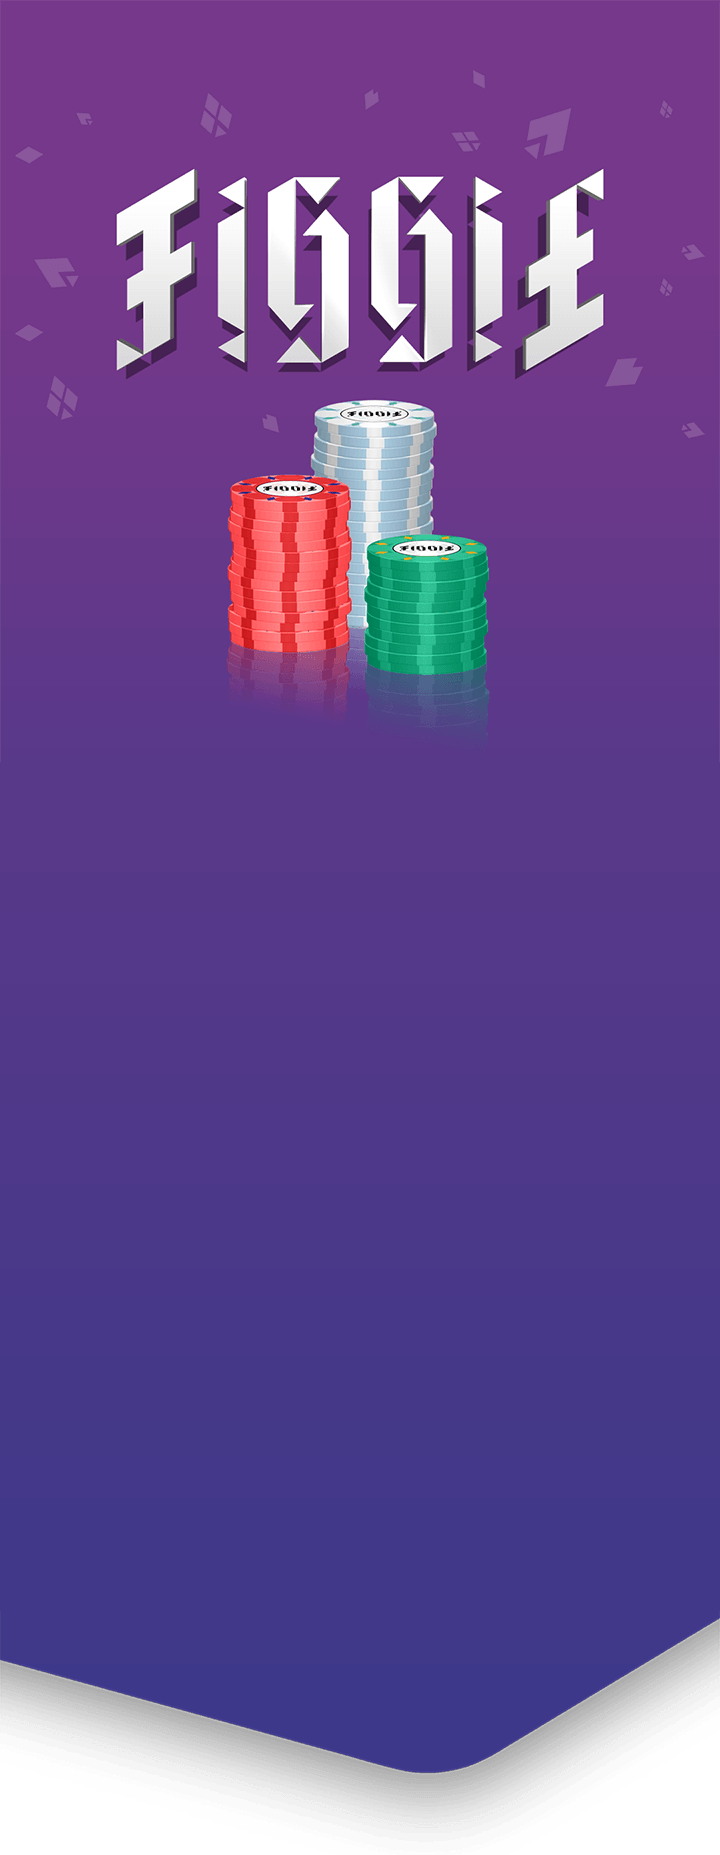 background purple gradient